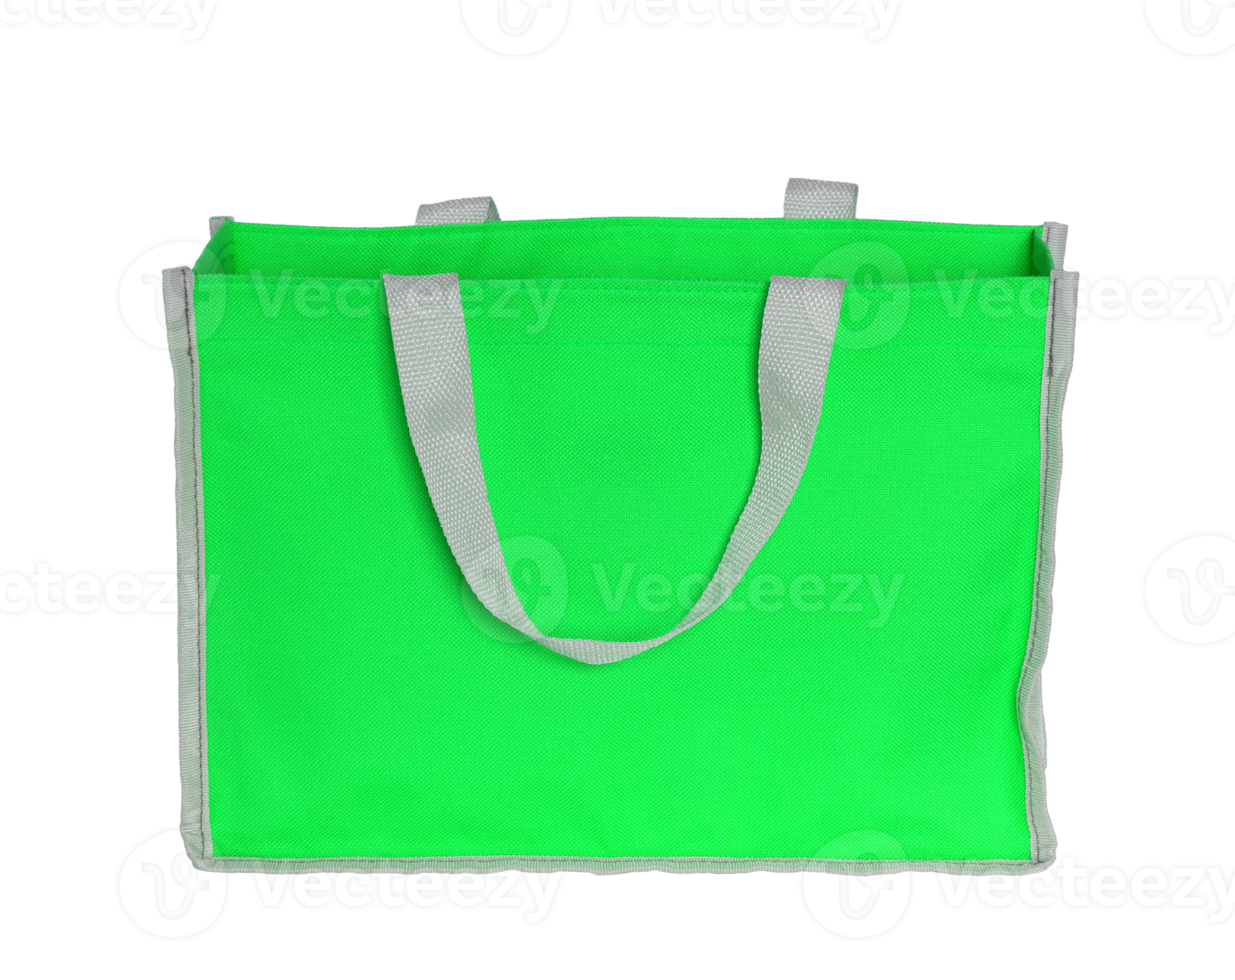 grüne einkaufstasche isoliert mit beschneidungspfad für modell png